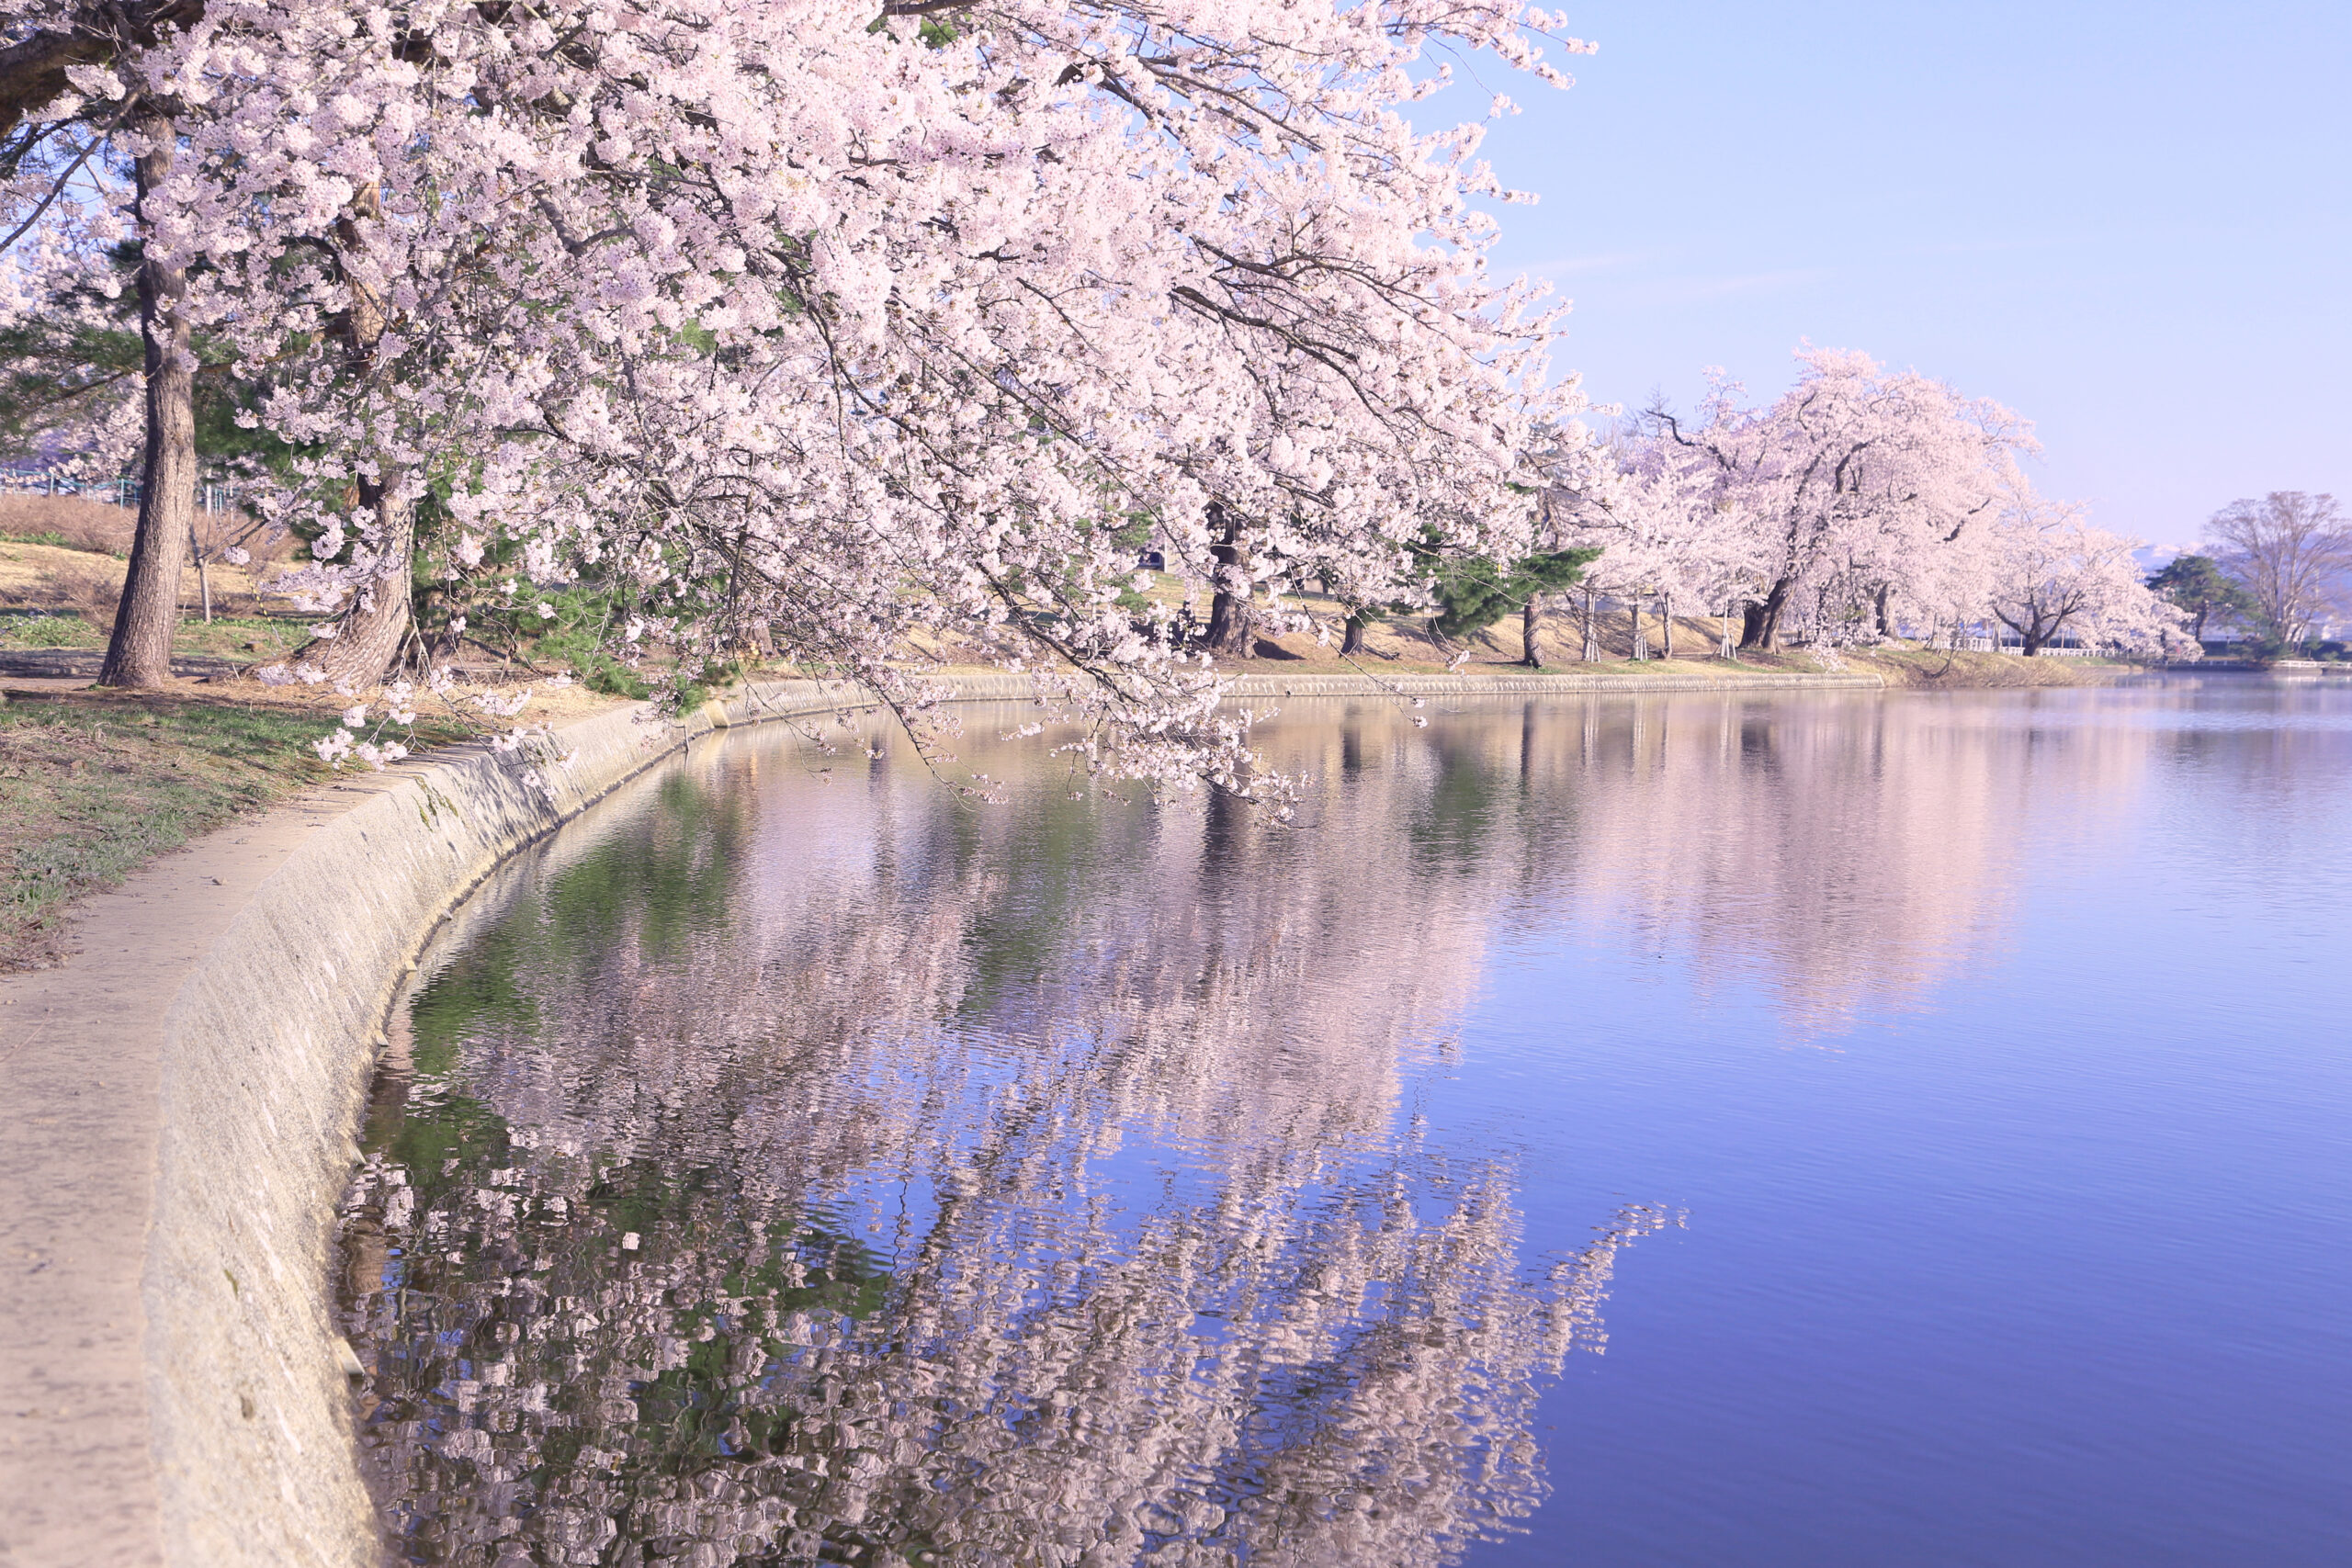 春には湖畔の桜が咲き誇りきれいな桜並木が湖面に写し出される徳良湖